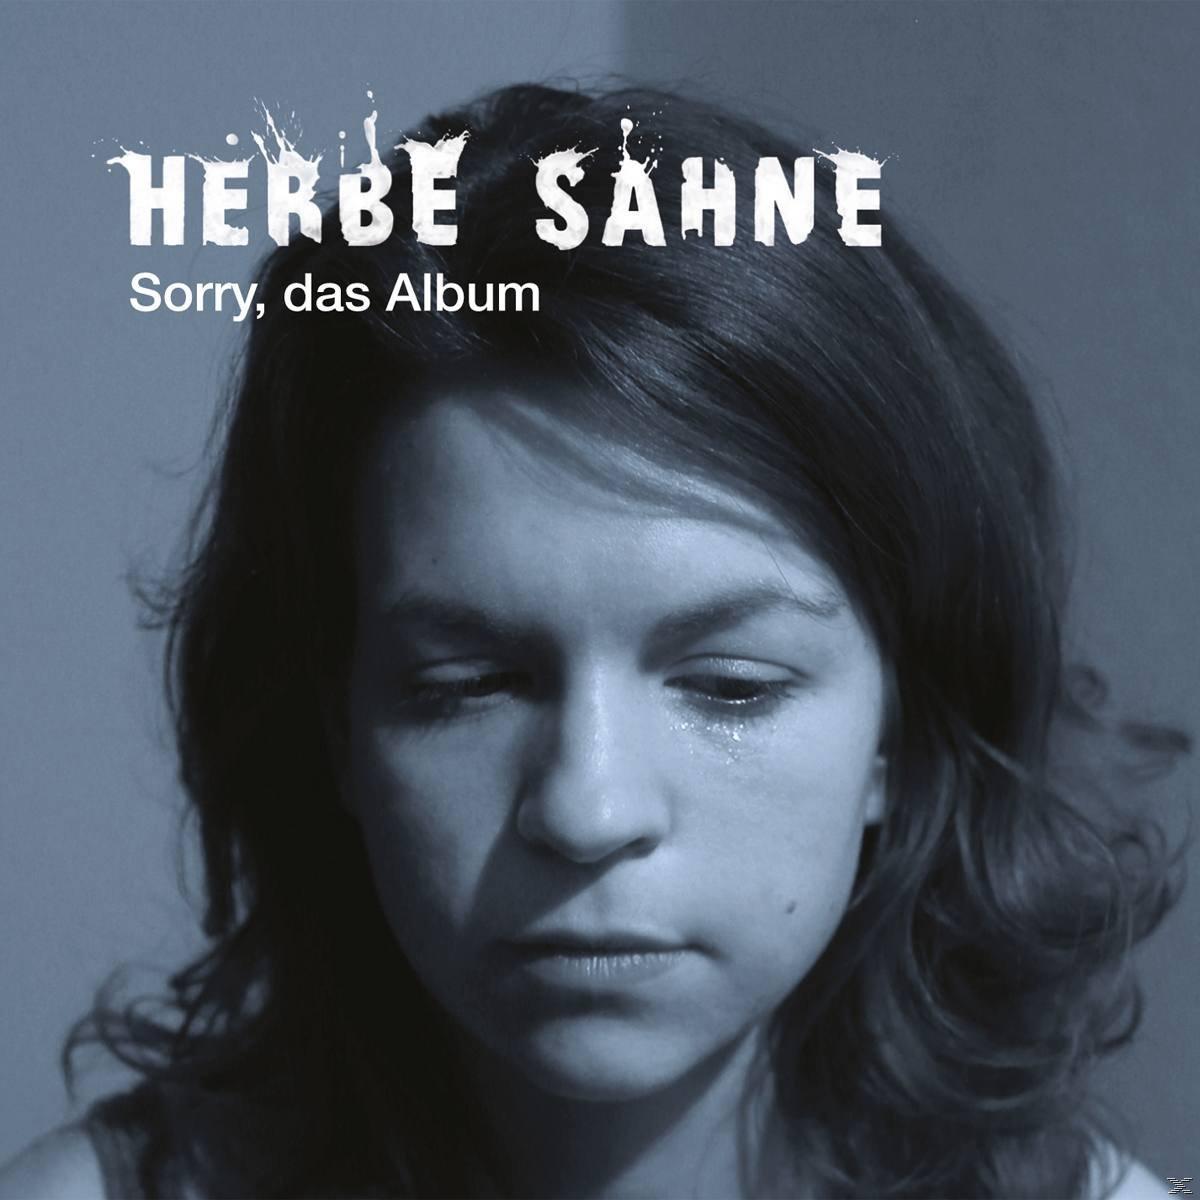 Herbe Sahne - Sorry, - Album Das (CD)